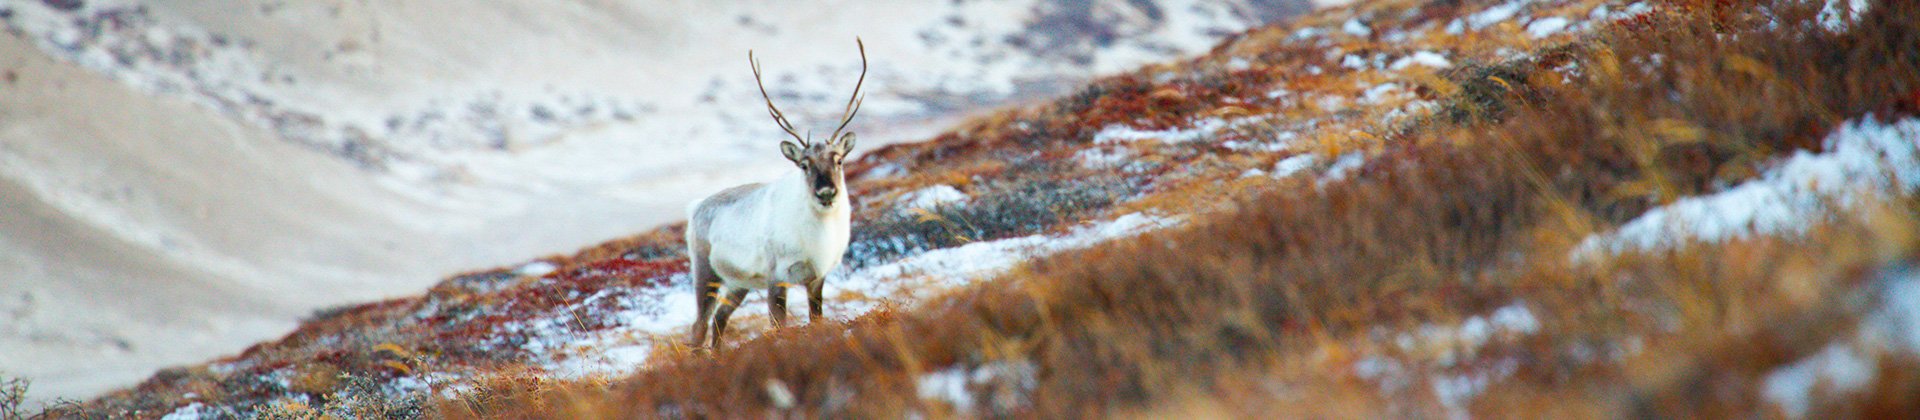 Reindeer, Greenland